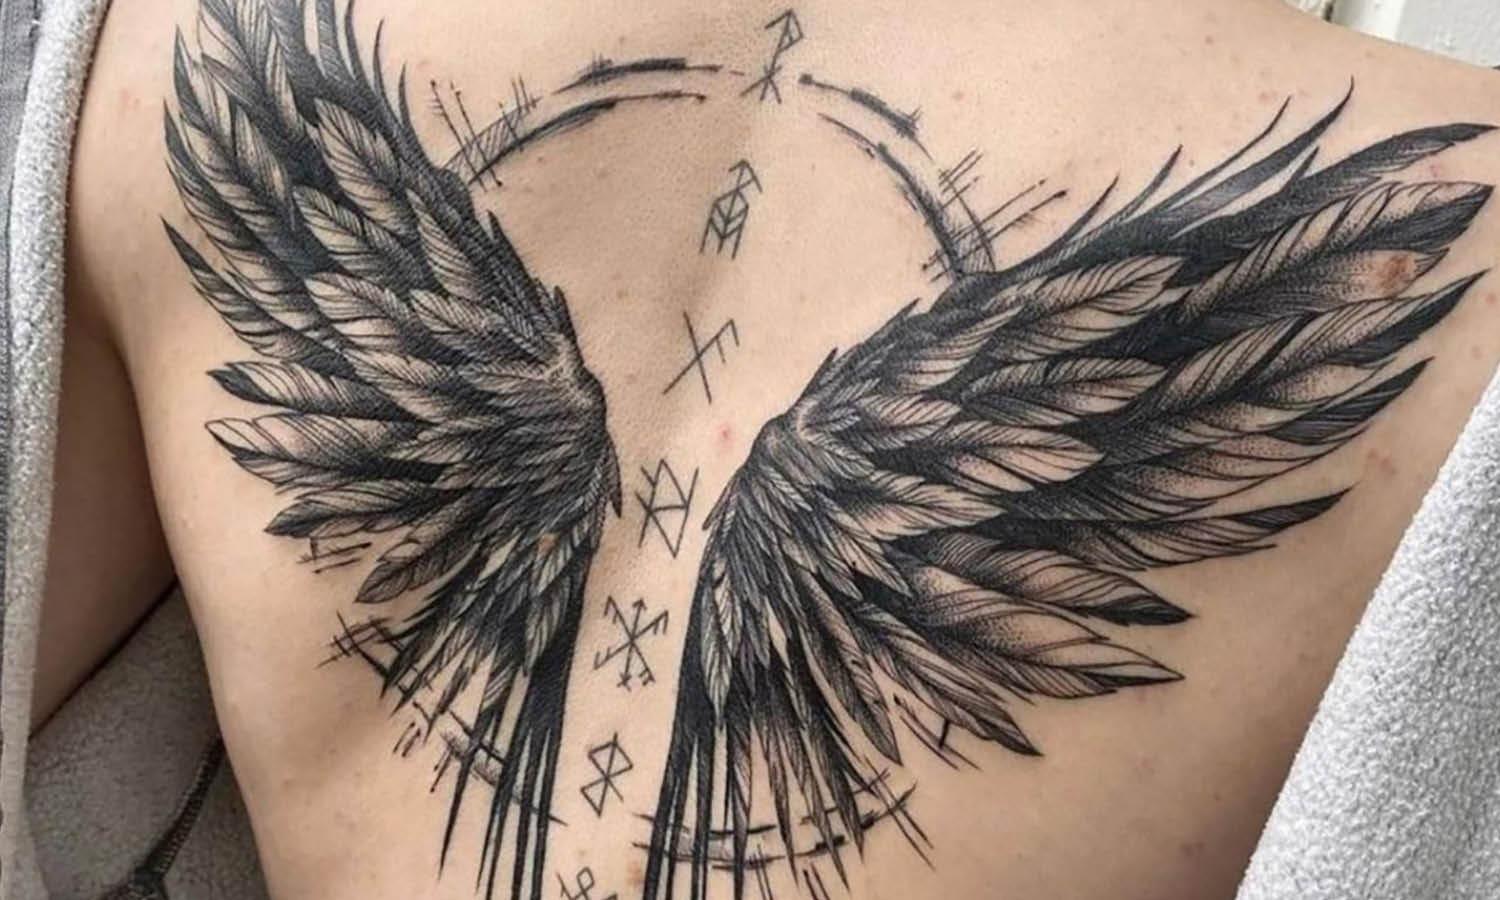 Wings tattoo __ ___ #wingstattoo #tattoo #wings #tattoos #nametattoo #ink  #inked #tattooartist #tattooideas #smalltattoo #tattoolovers ... | Instagram